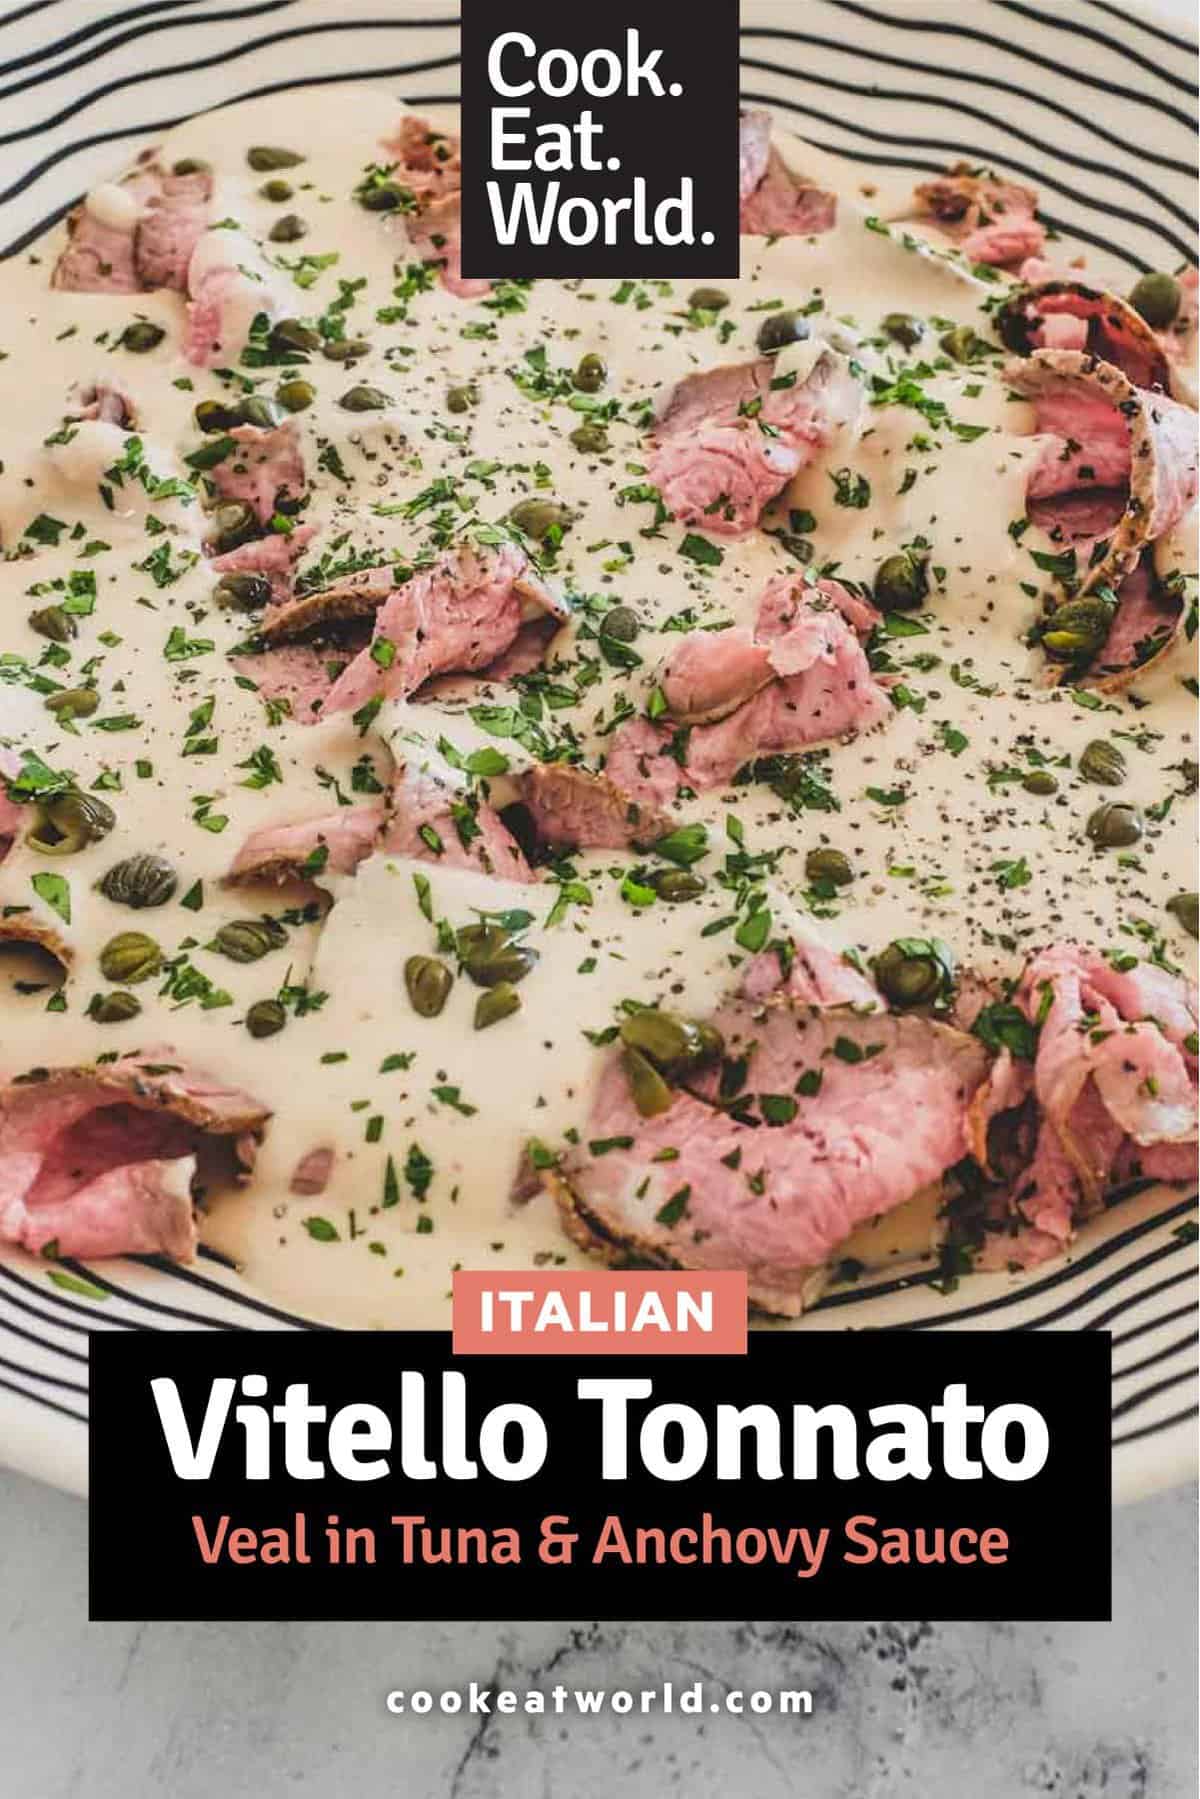 Vitello Tonnato (Veal with Tuna & Anchovy Sauce